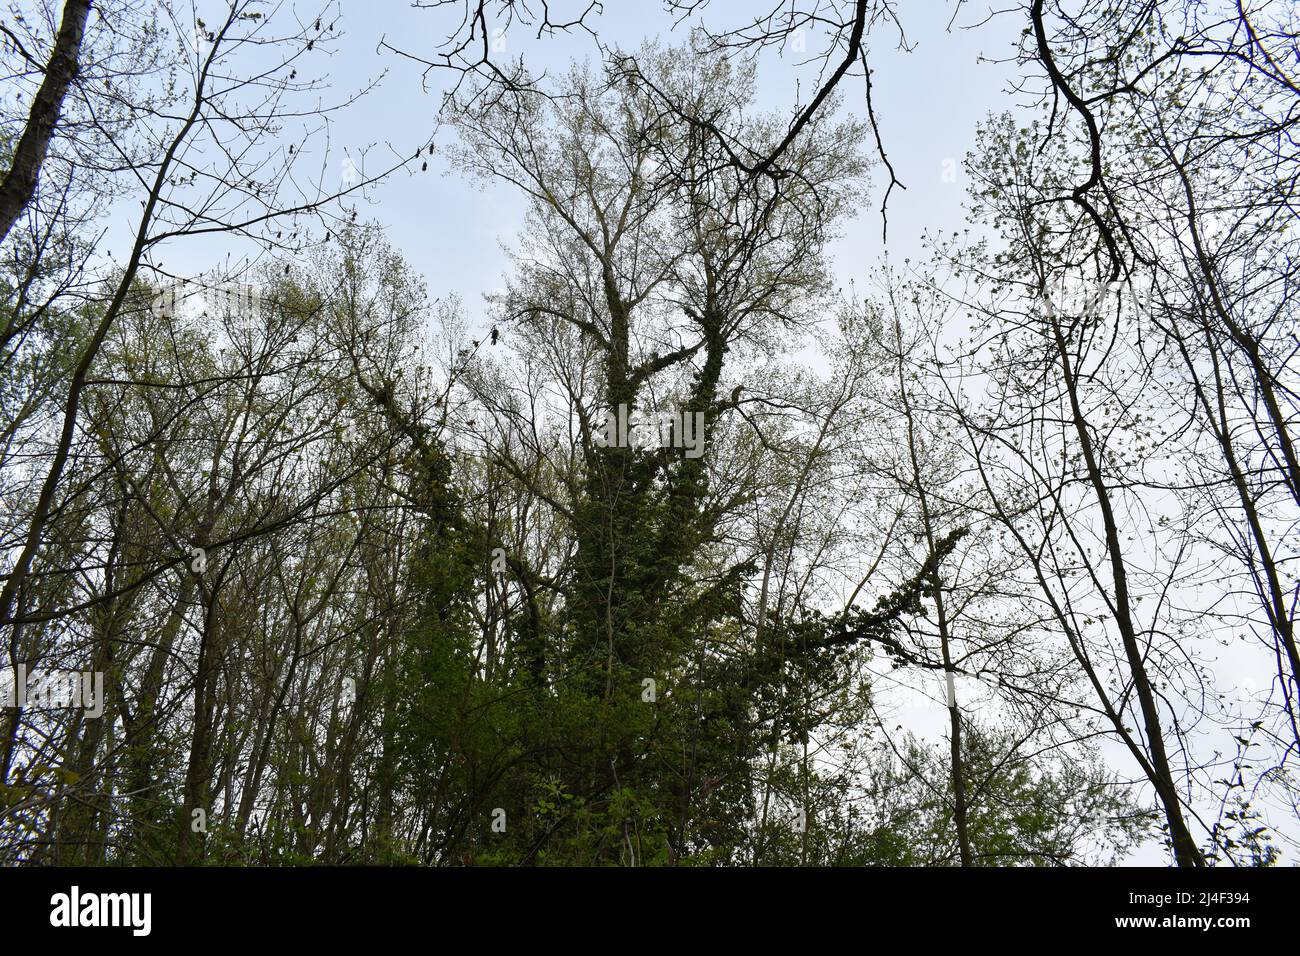 Druidenbaum, Baum, Efeu, Baum mit Efeu, tree, ivy, druids, celtic, mystic place, new age, branches, forest, woods, leaves Stock Photo